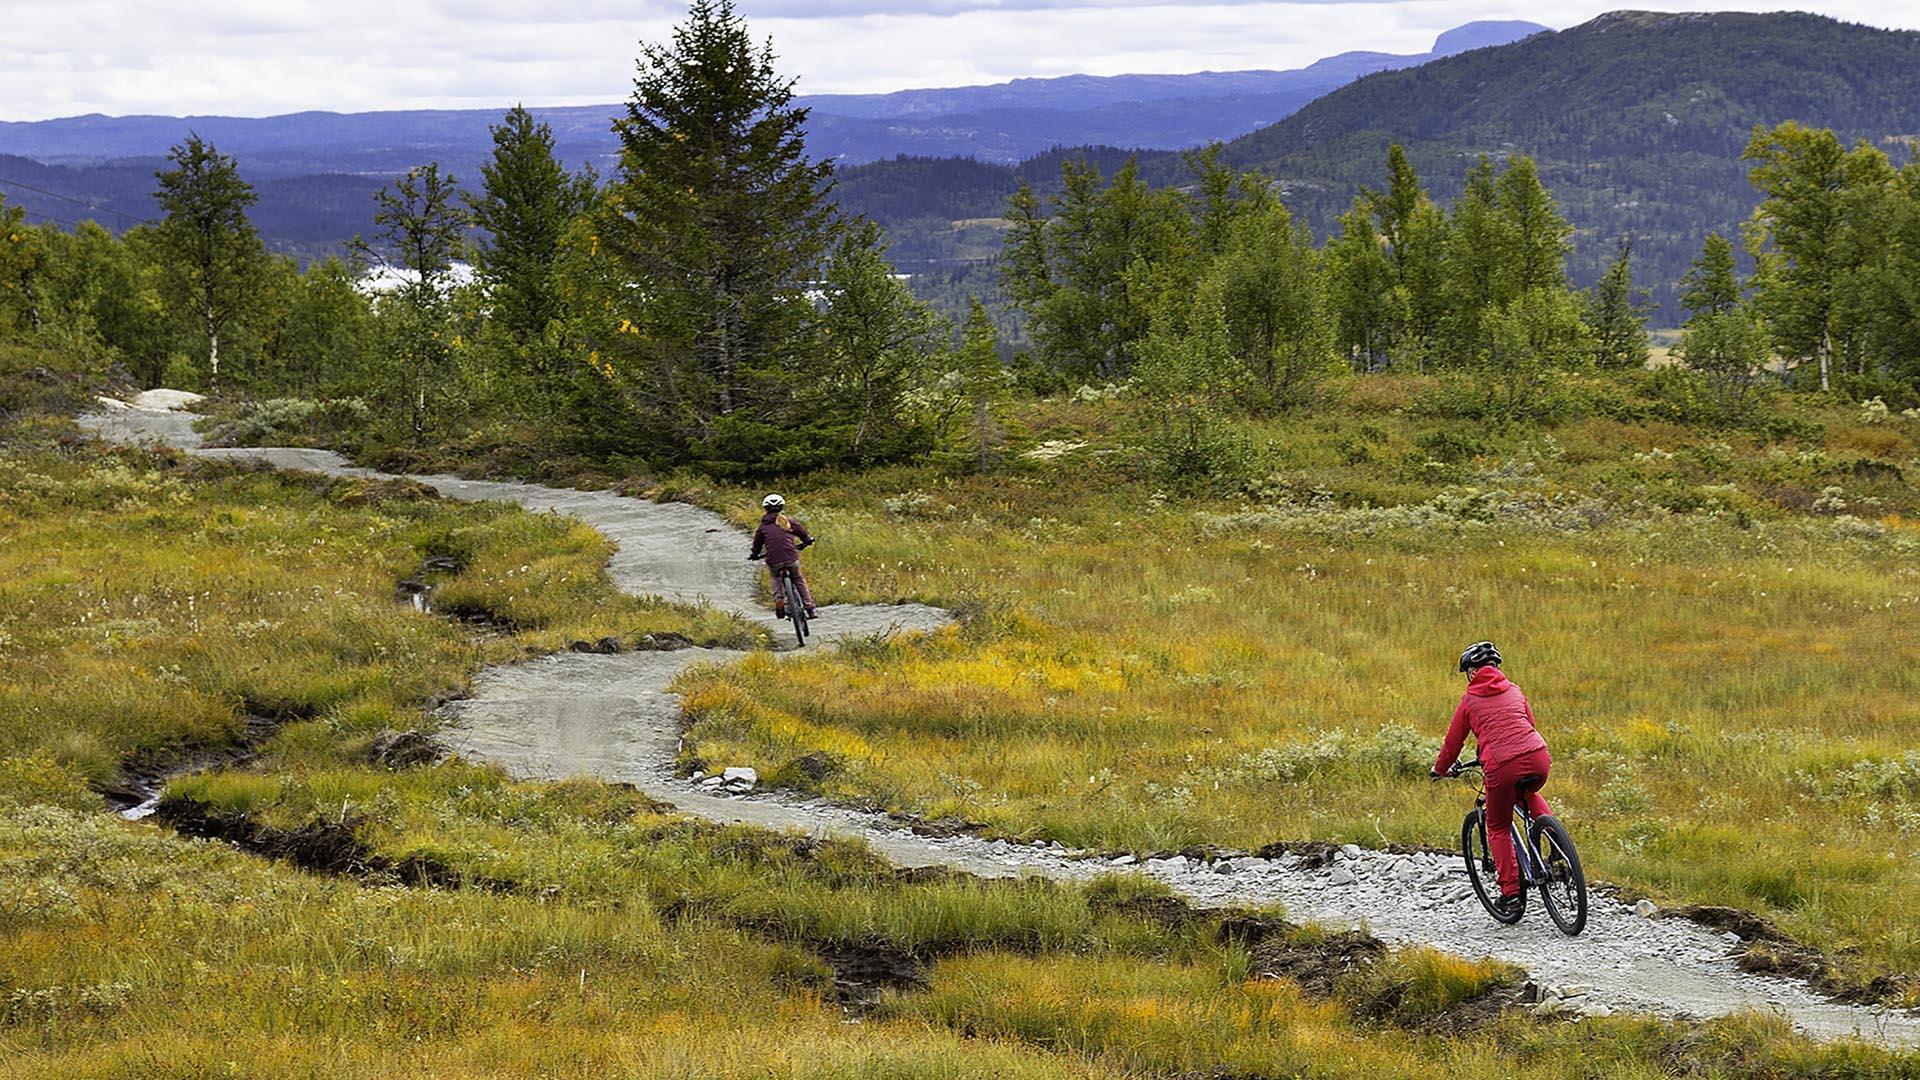 Zwei Mädchen auf Mountainbikes auf einem nachhaltig angelegten Downhill-Trail, der in Kurven durch einen moorigen Abschnitt mit gelb-orangem Herbstgras führt.